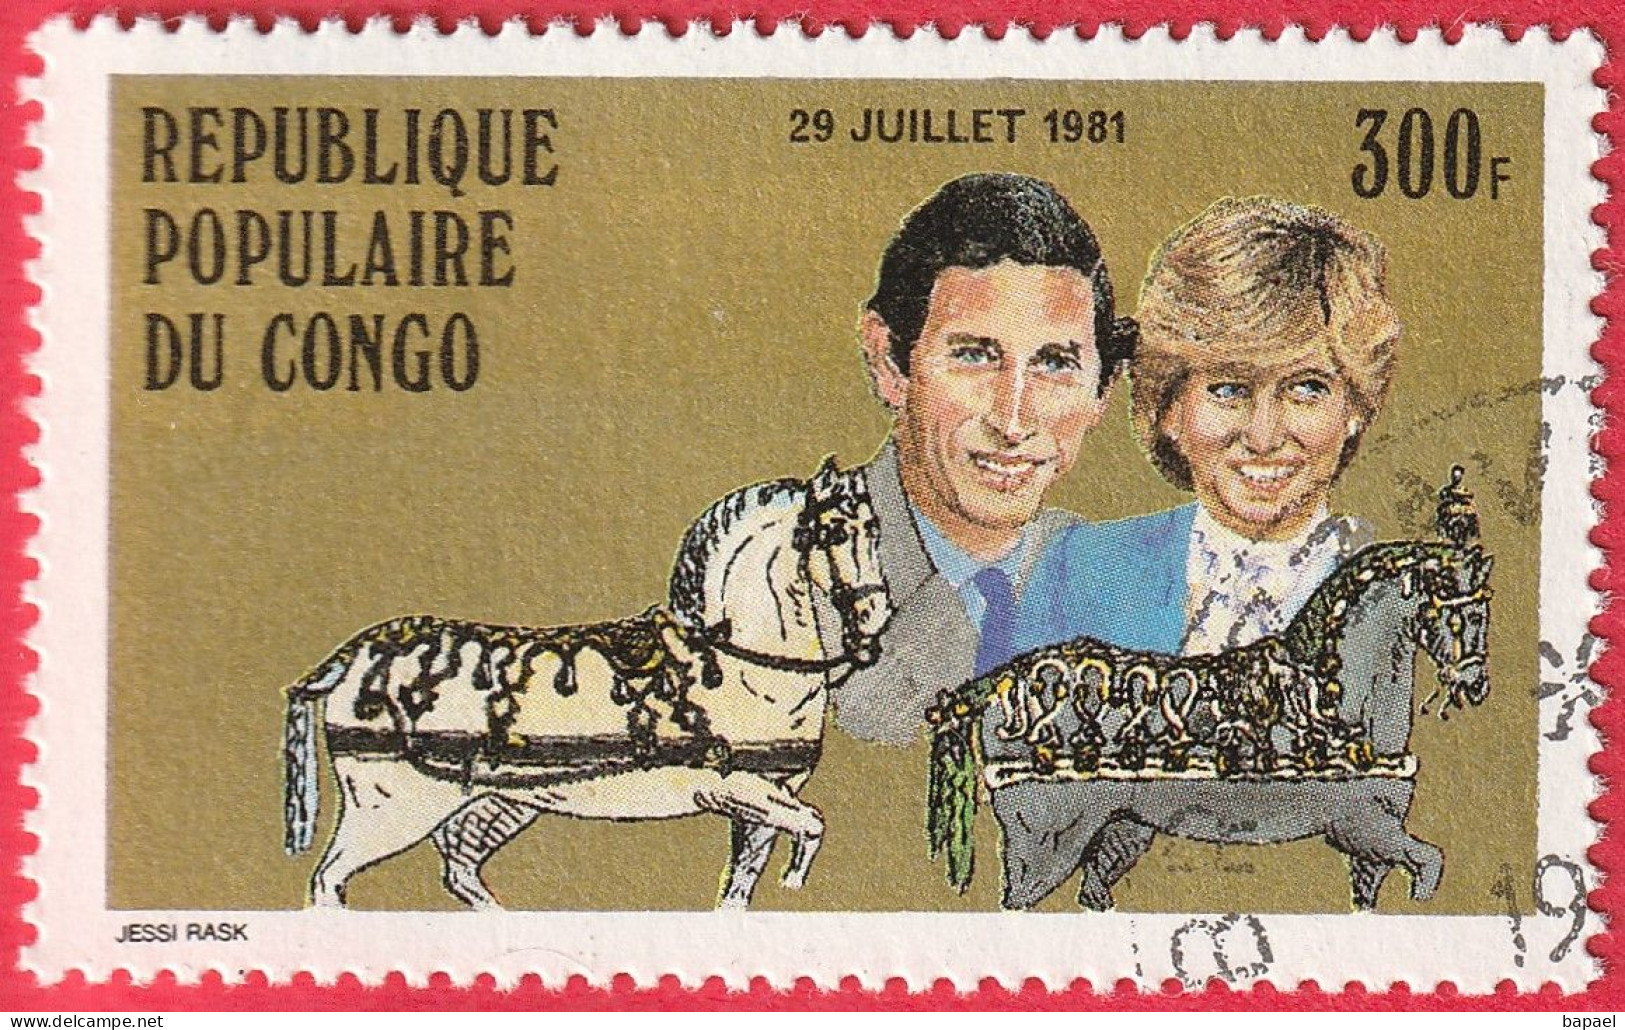 N° Yvert & Tellier 639 - Rép. Du Congo (1981) (Oblitéré) - Mariage Royal Du Prince Charles Et De Lady Diana Spencer - Afgestempeld